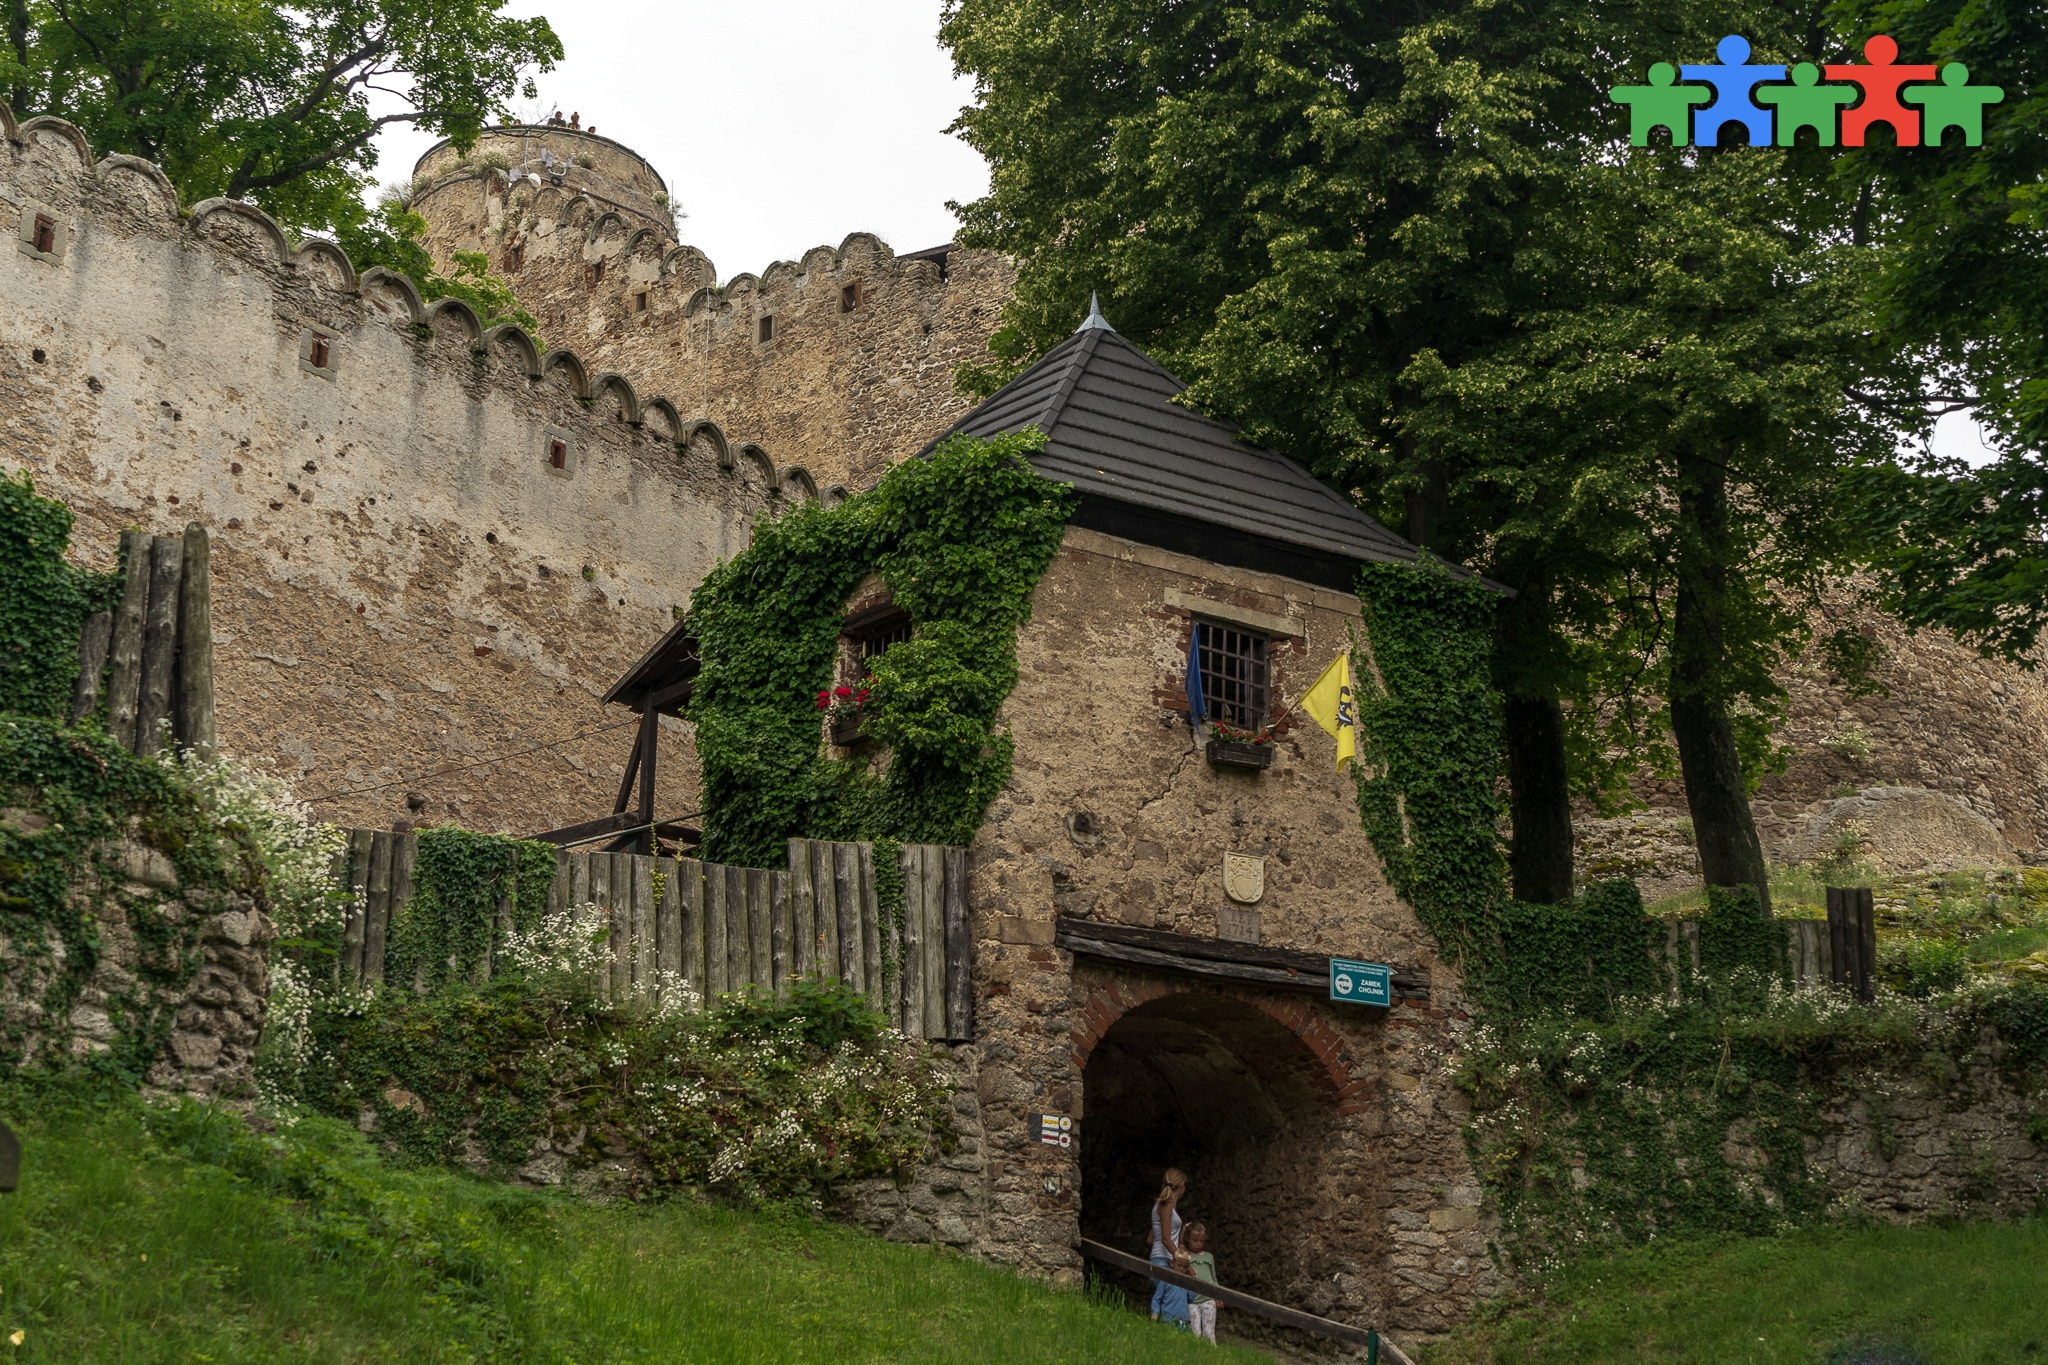 Zamek Chojnik - bardzo popularne i świetnie zachowane ruiny XIII-wiecznej warowni obronnej na Dolnym Śląsku, przyjemna górska pętla i pkt widokowy.